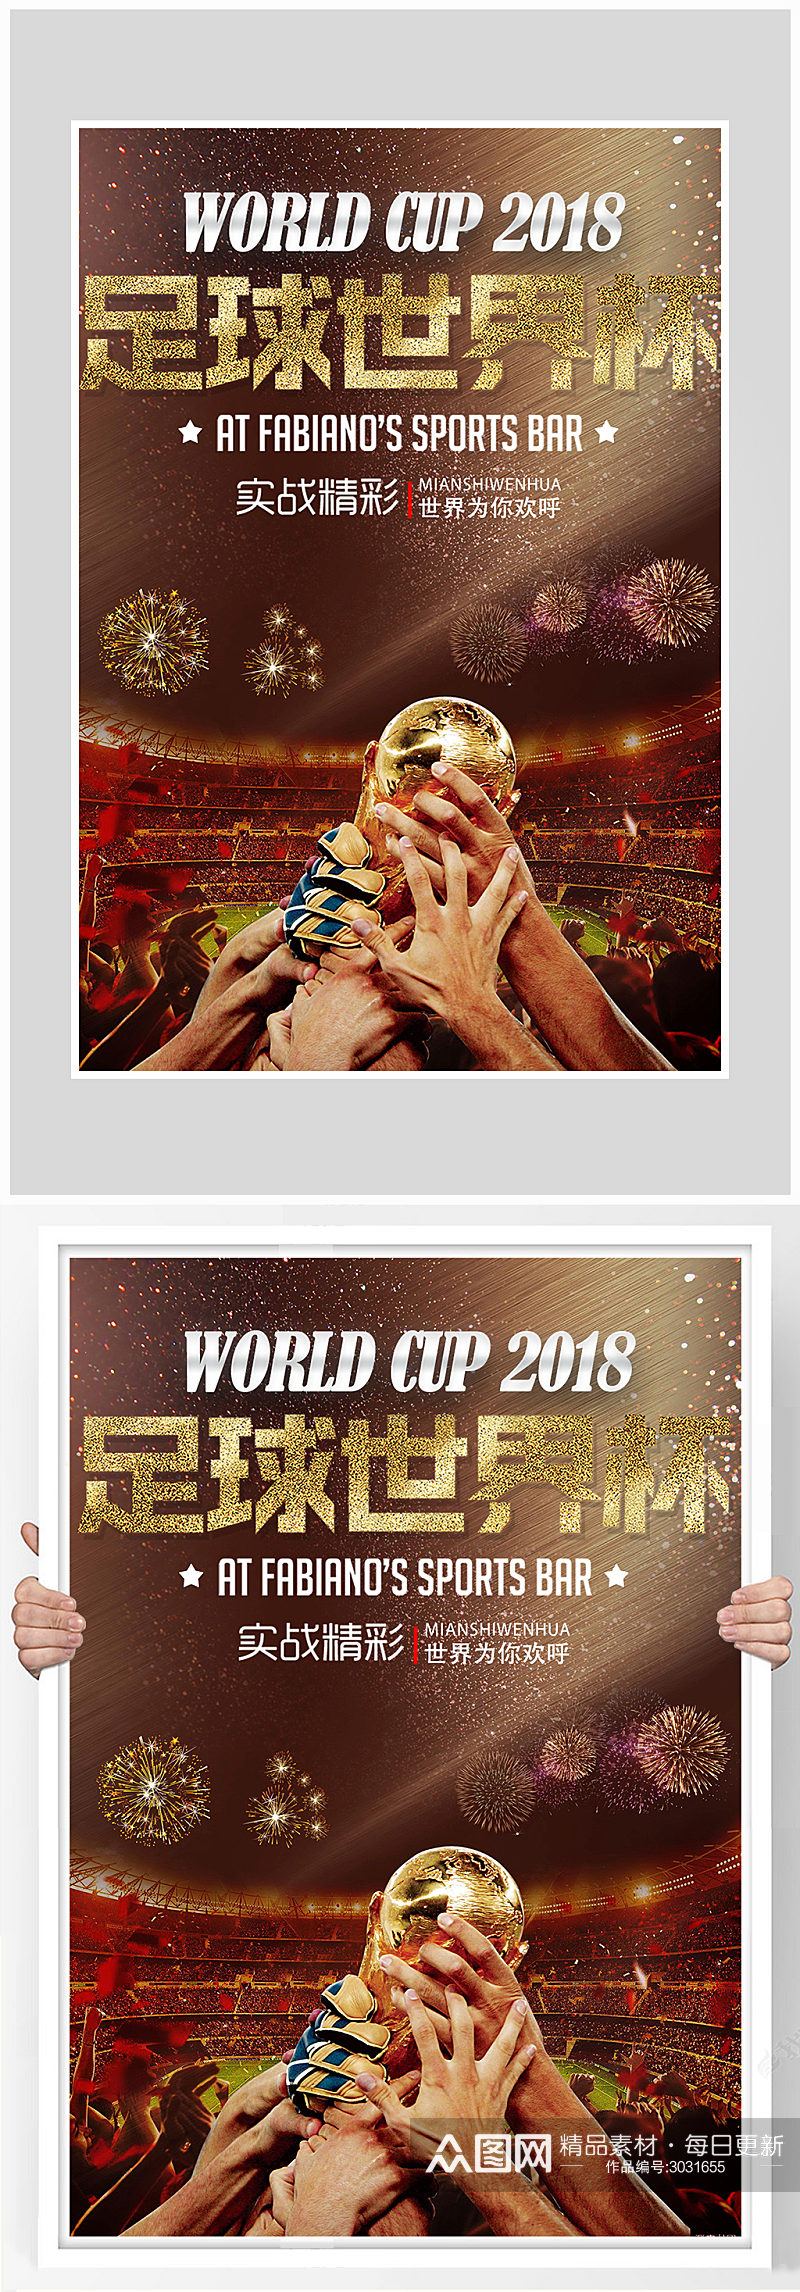 黑金足球世界杯比赛运功海报设计素材